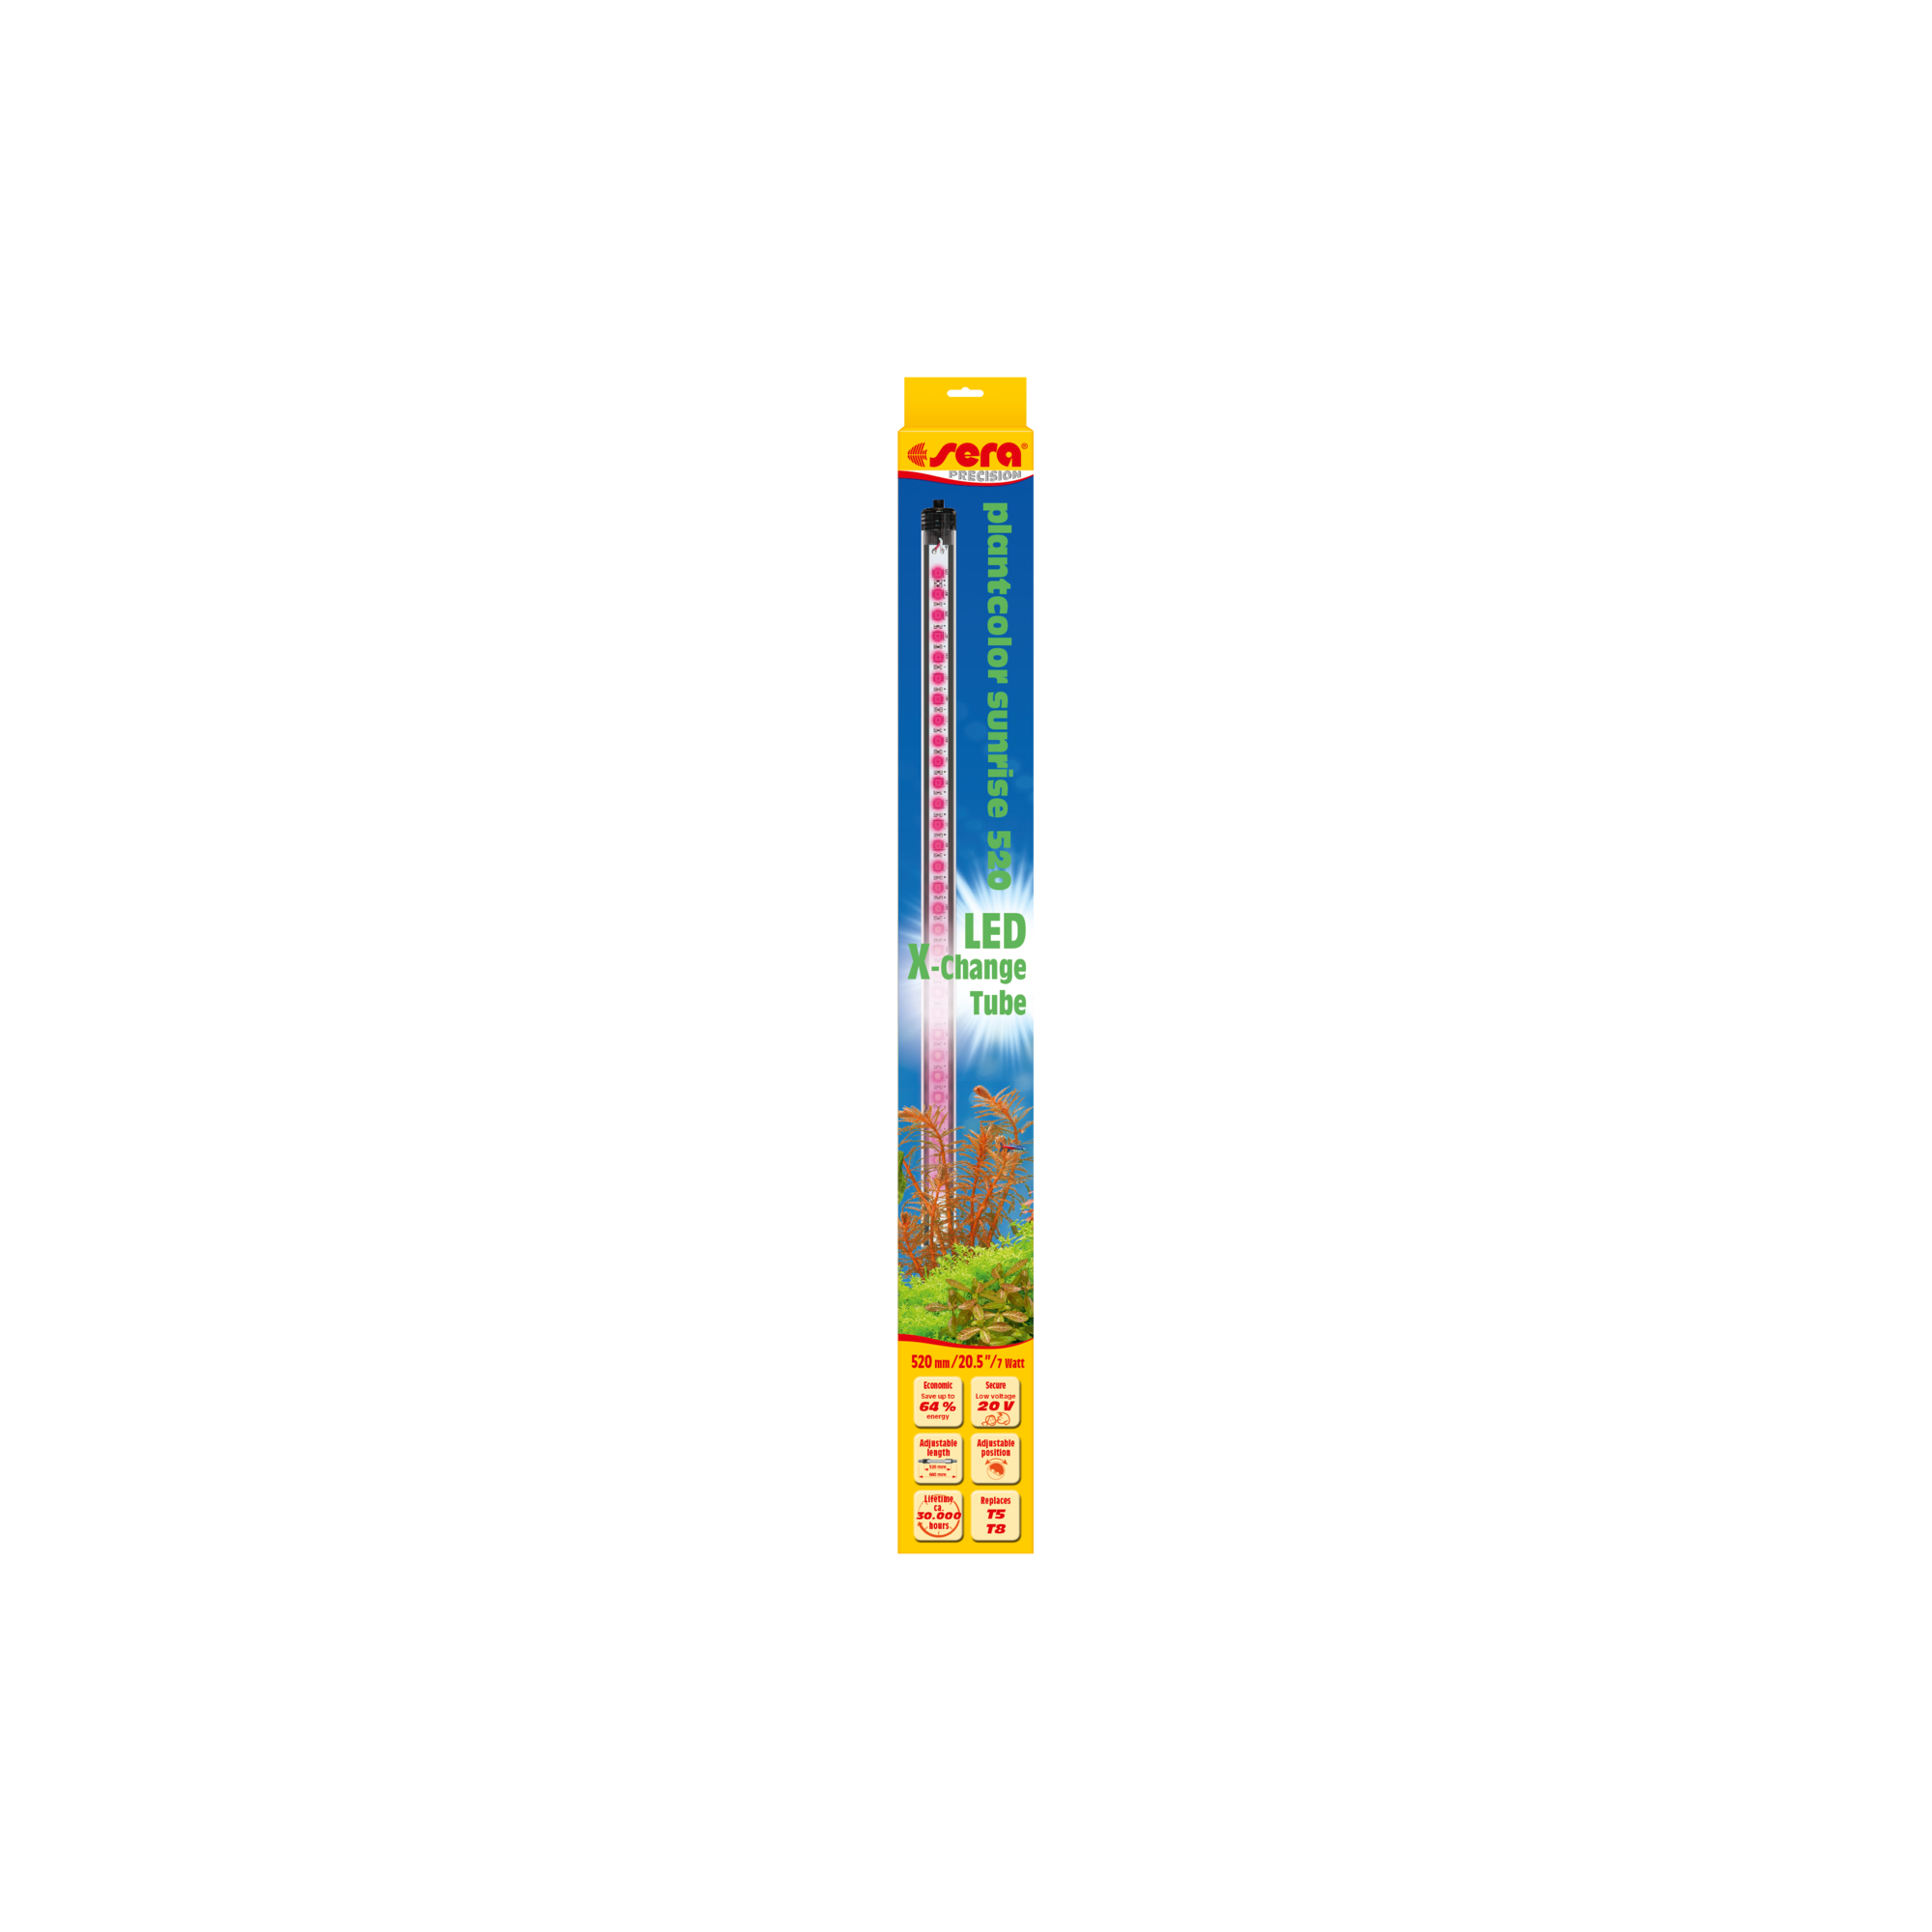 LED-Aquarienleuchte "Precision" Plantcolor Sunrise 520 7 W + product picture